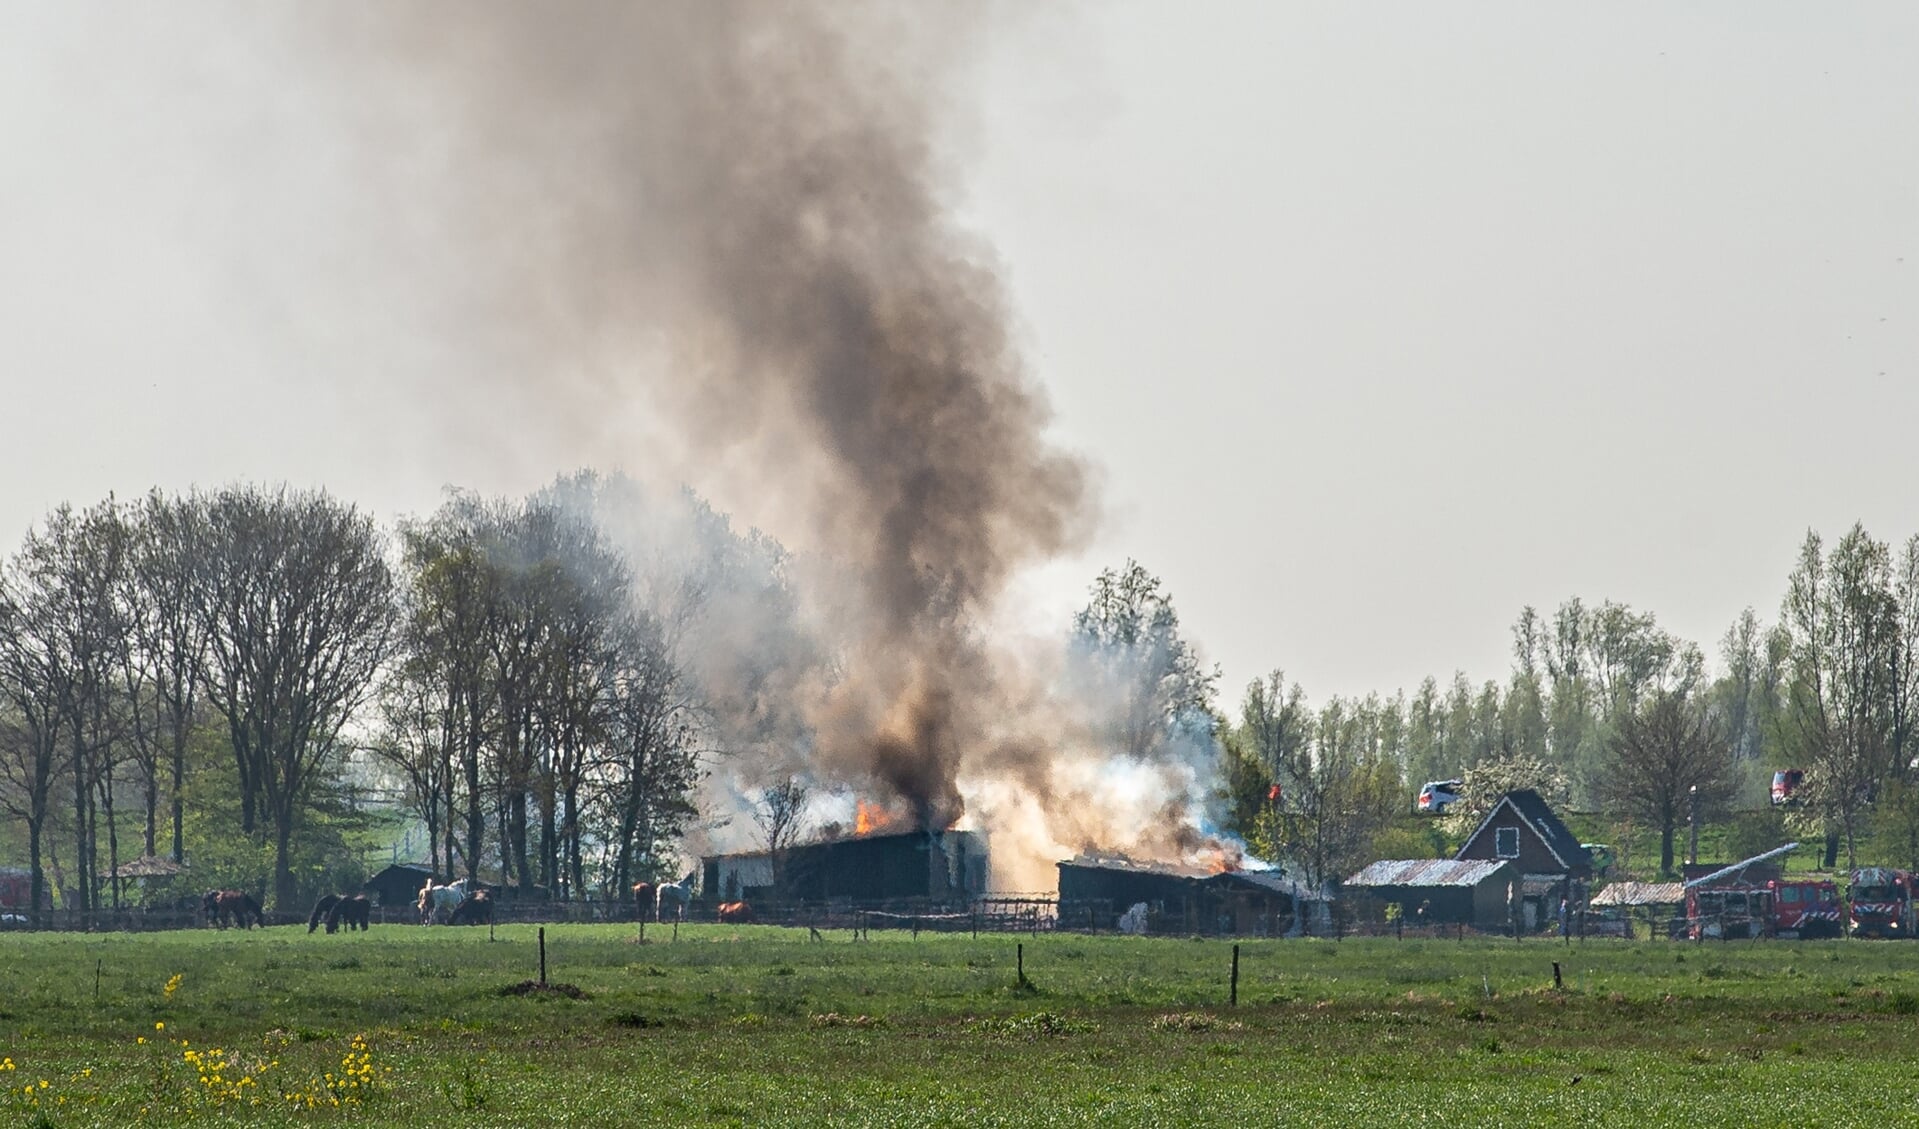 Woensdagochtend rond 10.40 uur brak een forse schuurbrand uit aan de Lekdijk-West in Bergambacht. Brandweerkorpsen uit de regio rukten uit met groot materieel. De rookontwikkeling was tot in de wijde omtrek te zien.